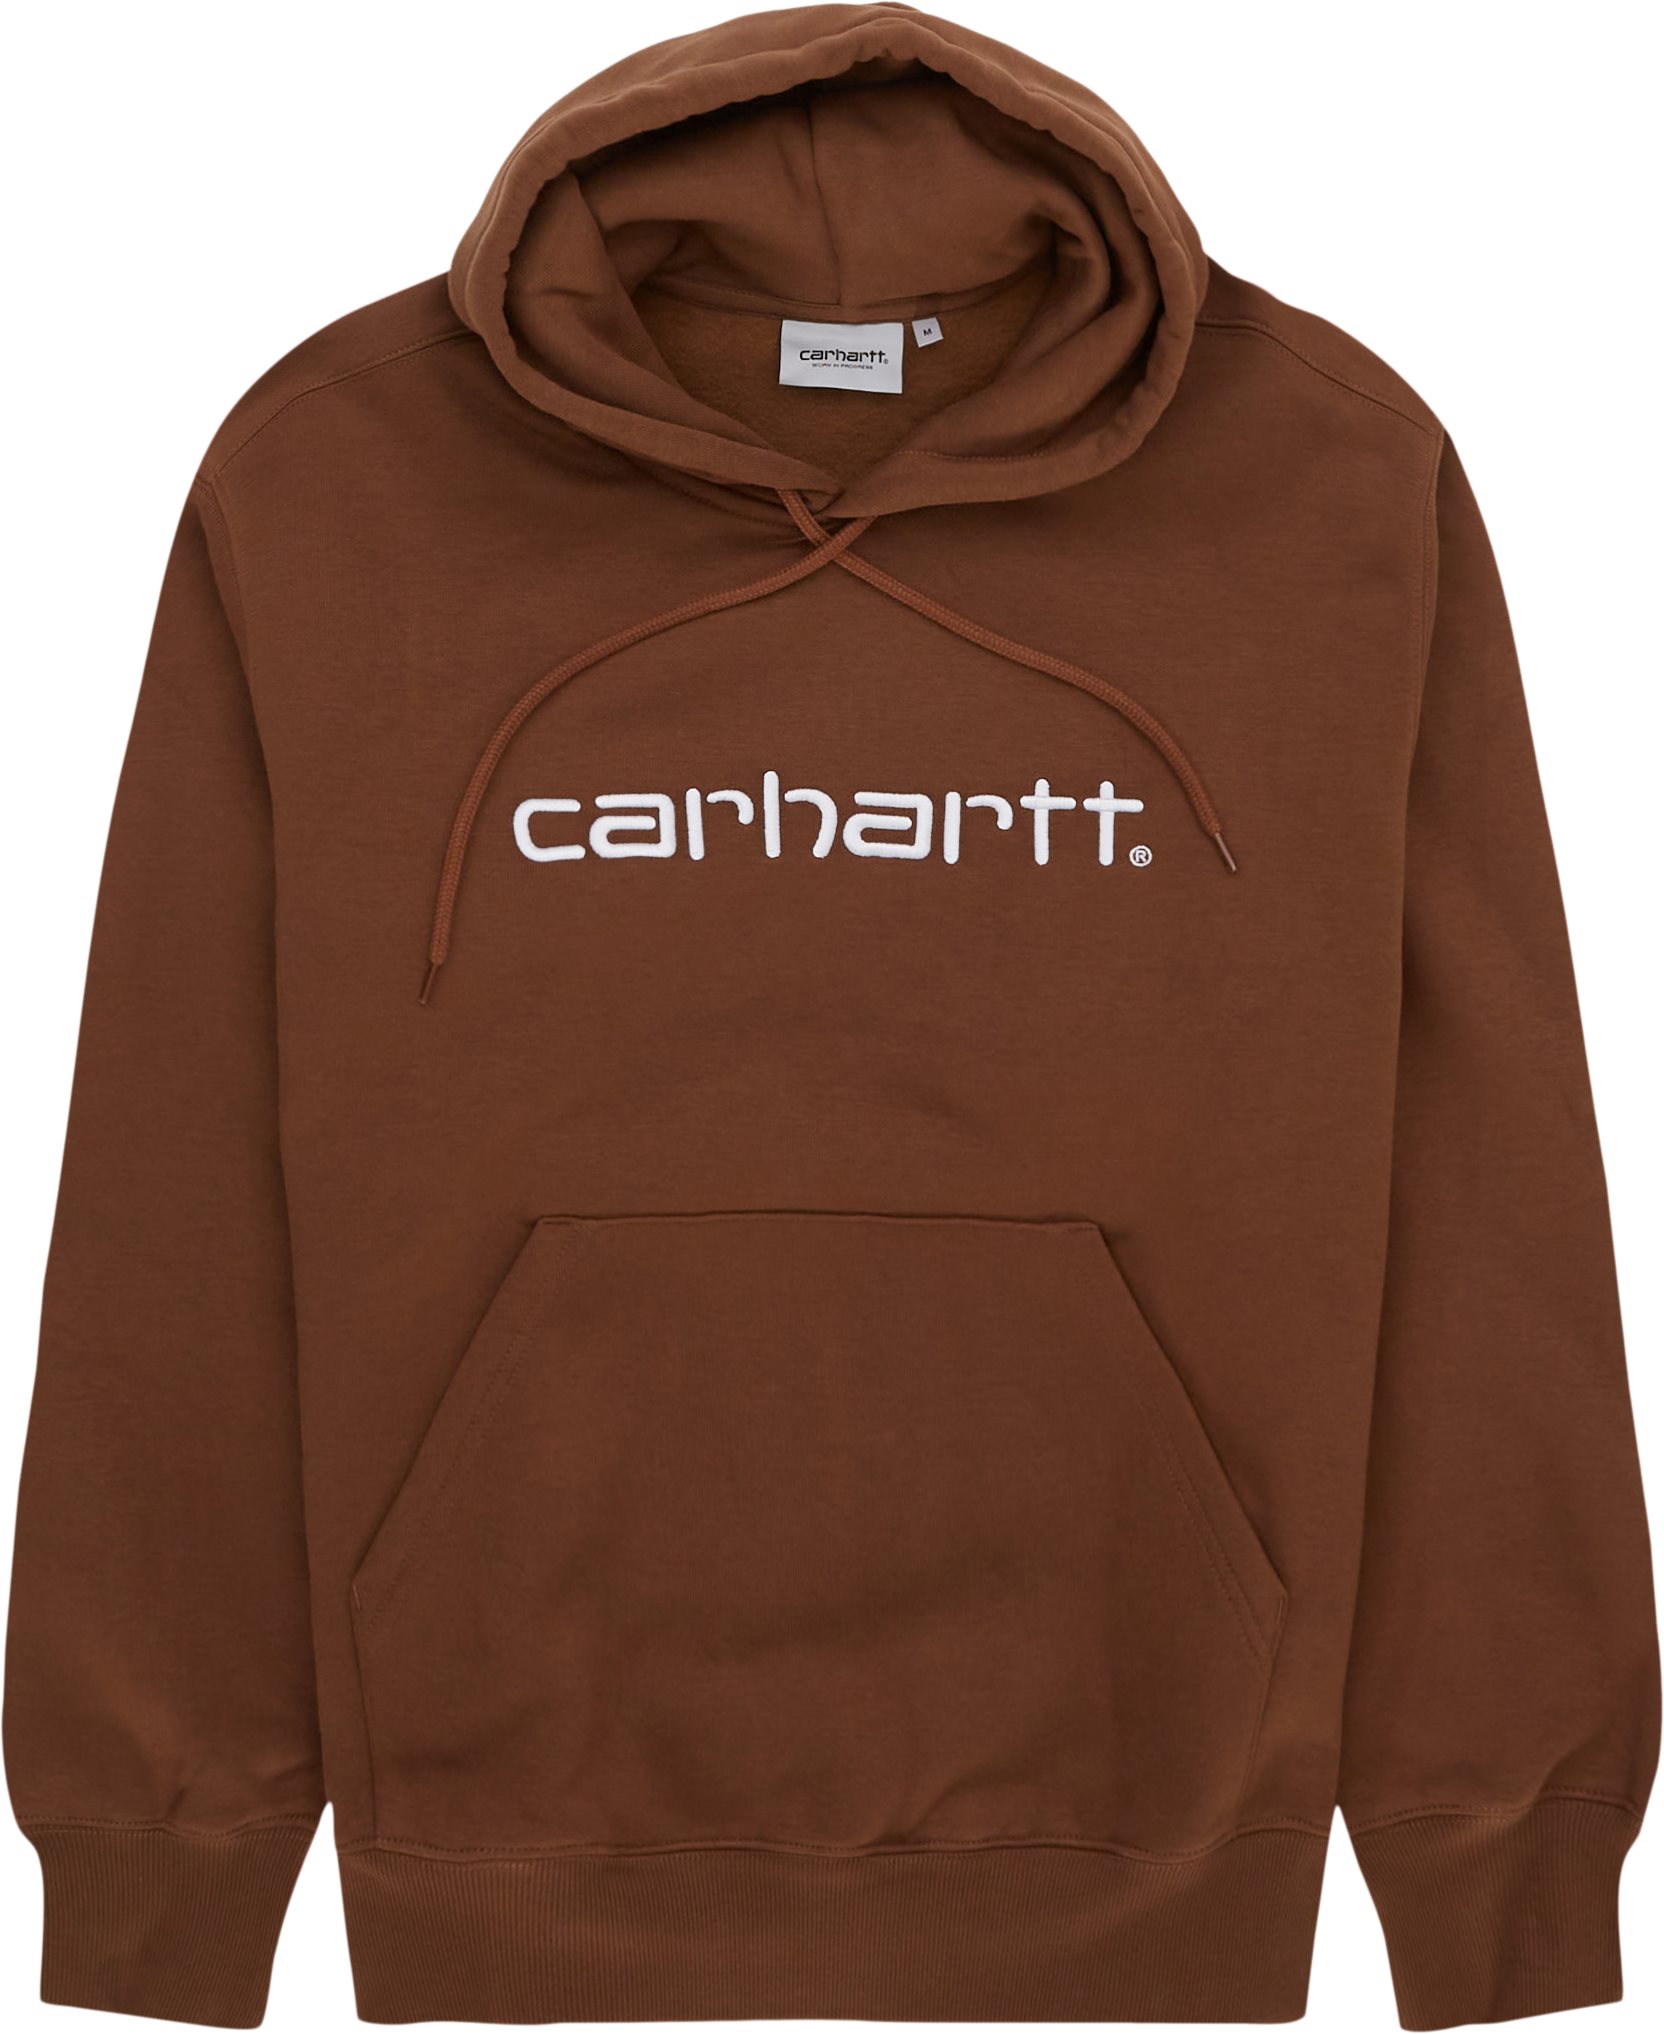 Carhartt WIP Sweatshirts HOODED CARHARTT SWEATSHIRT I030230 Brown